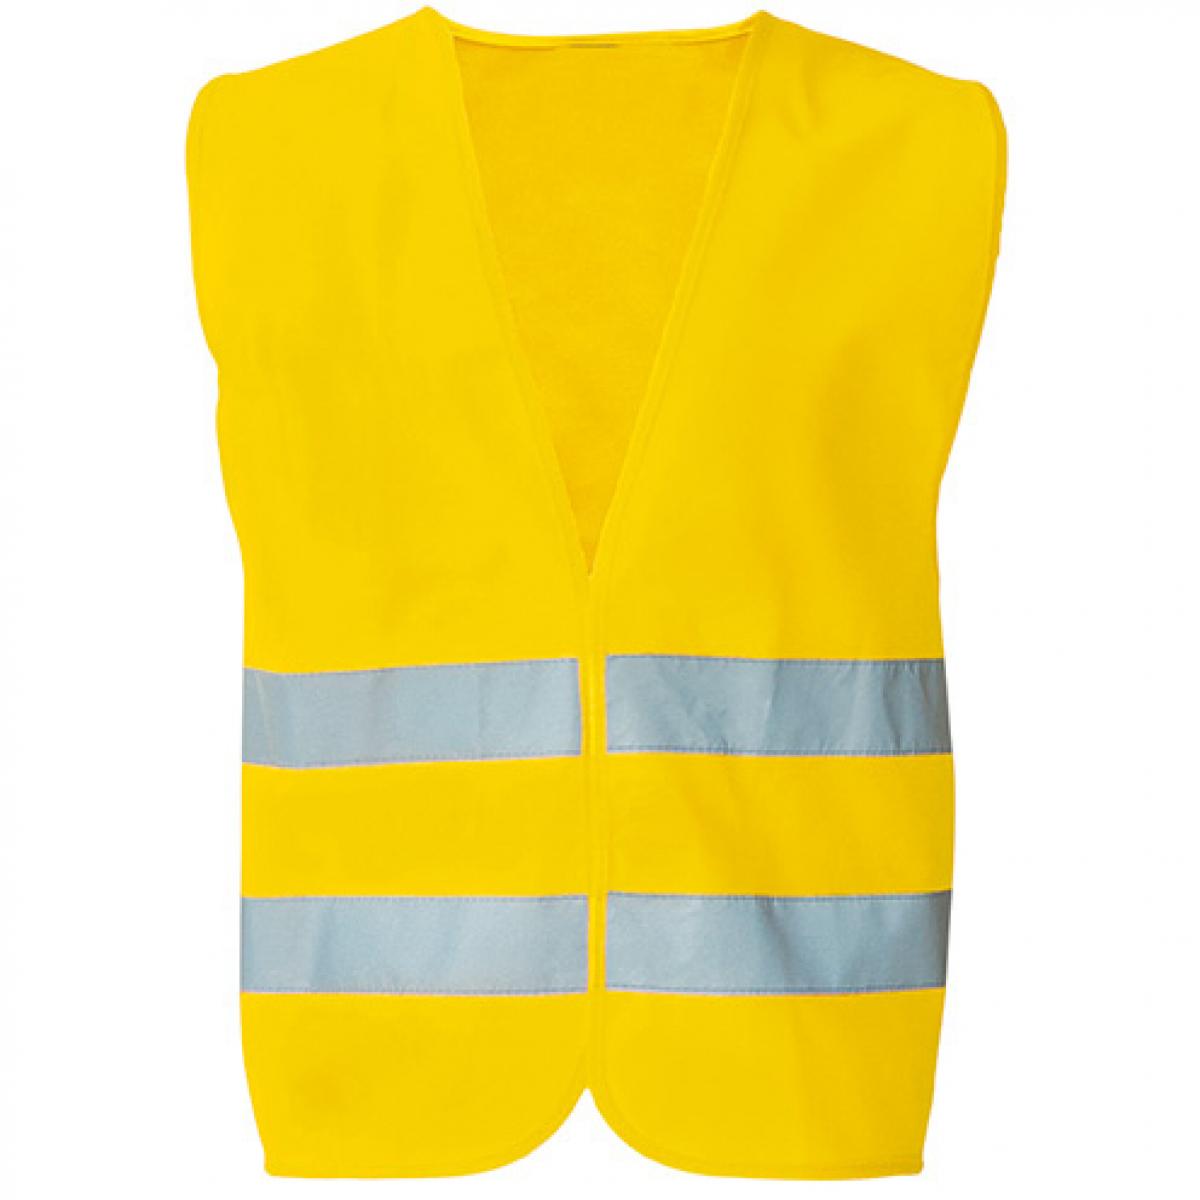 Hersteller: Printwear Herstellernummer:  Artikelbezeichnung: Safety Vest EN ISO 20471 - Sicherheitsweste Farbe: Signal Yellow